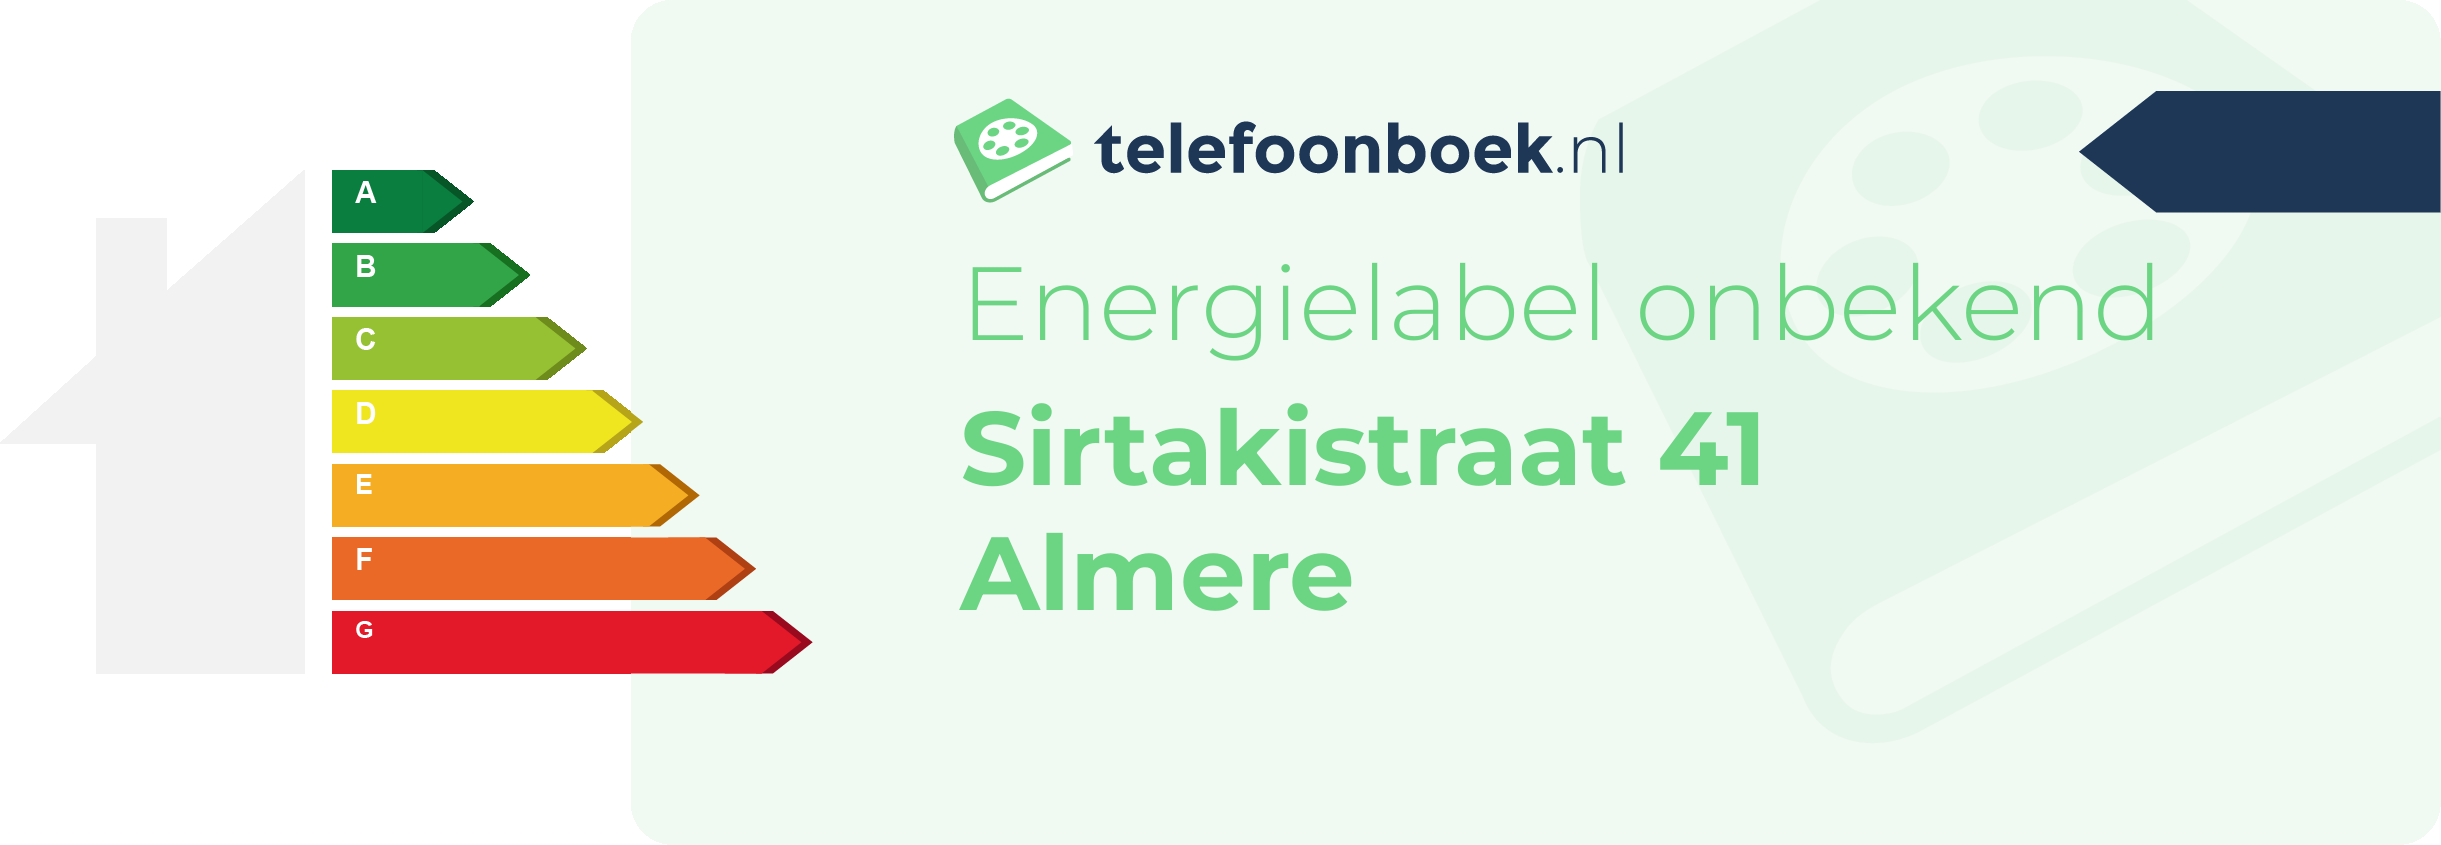 Energielabel Sirtakistraat 41 Almere